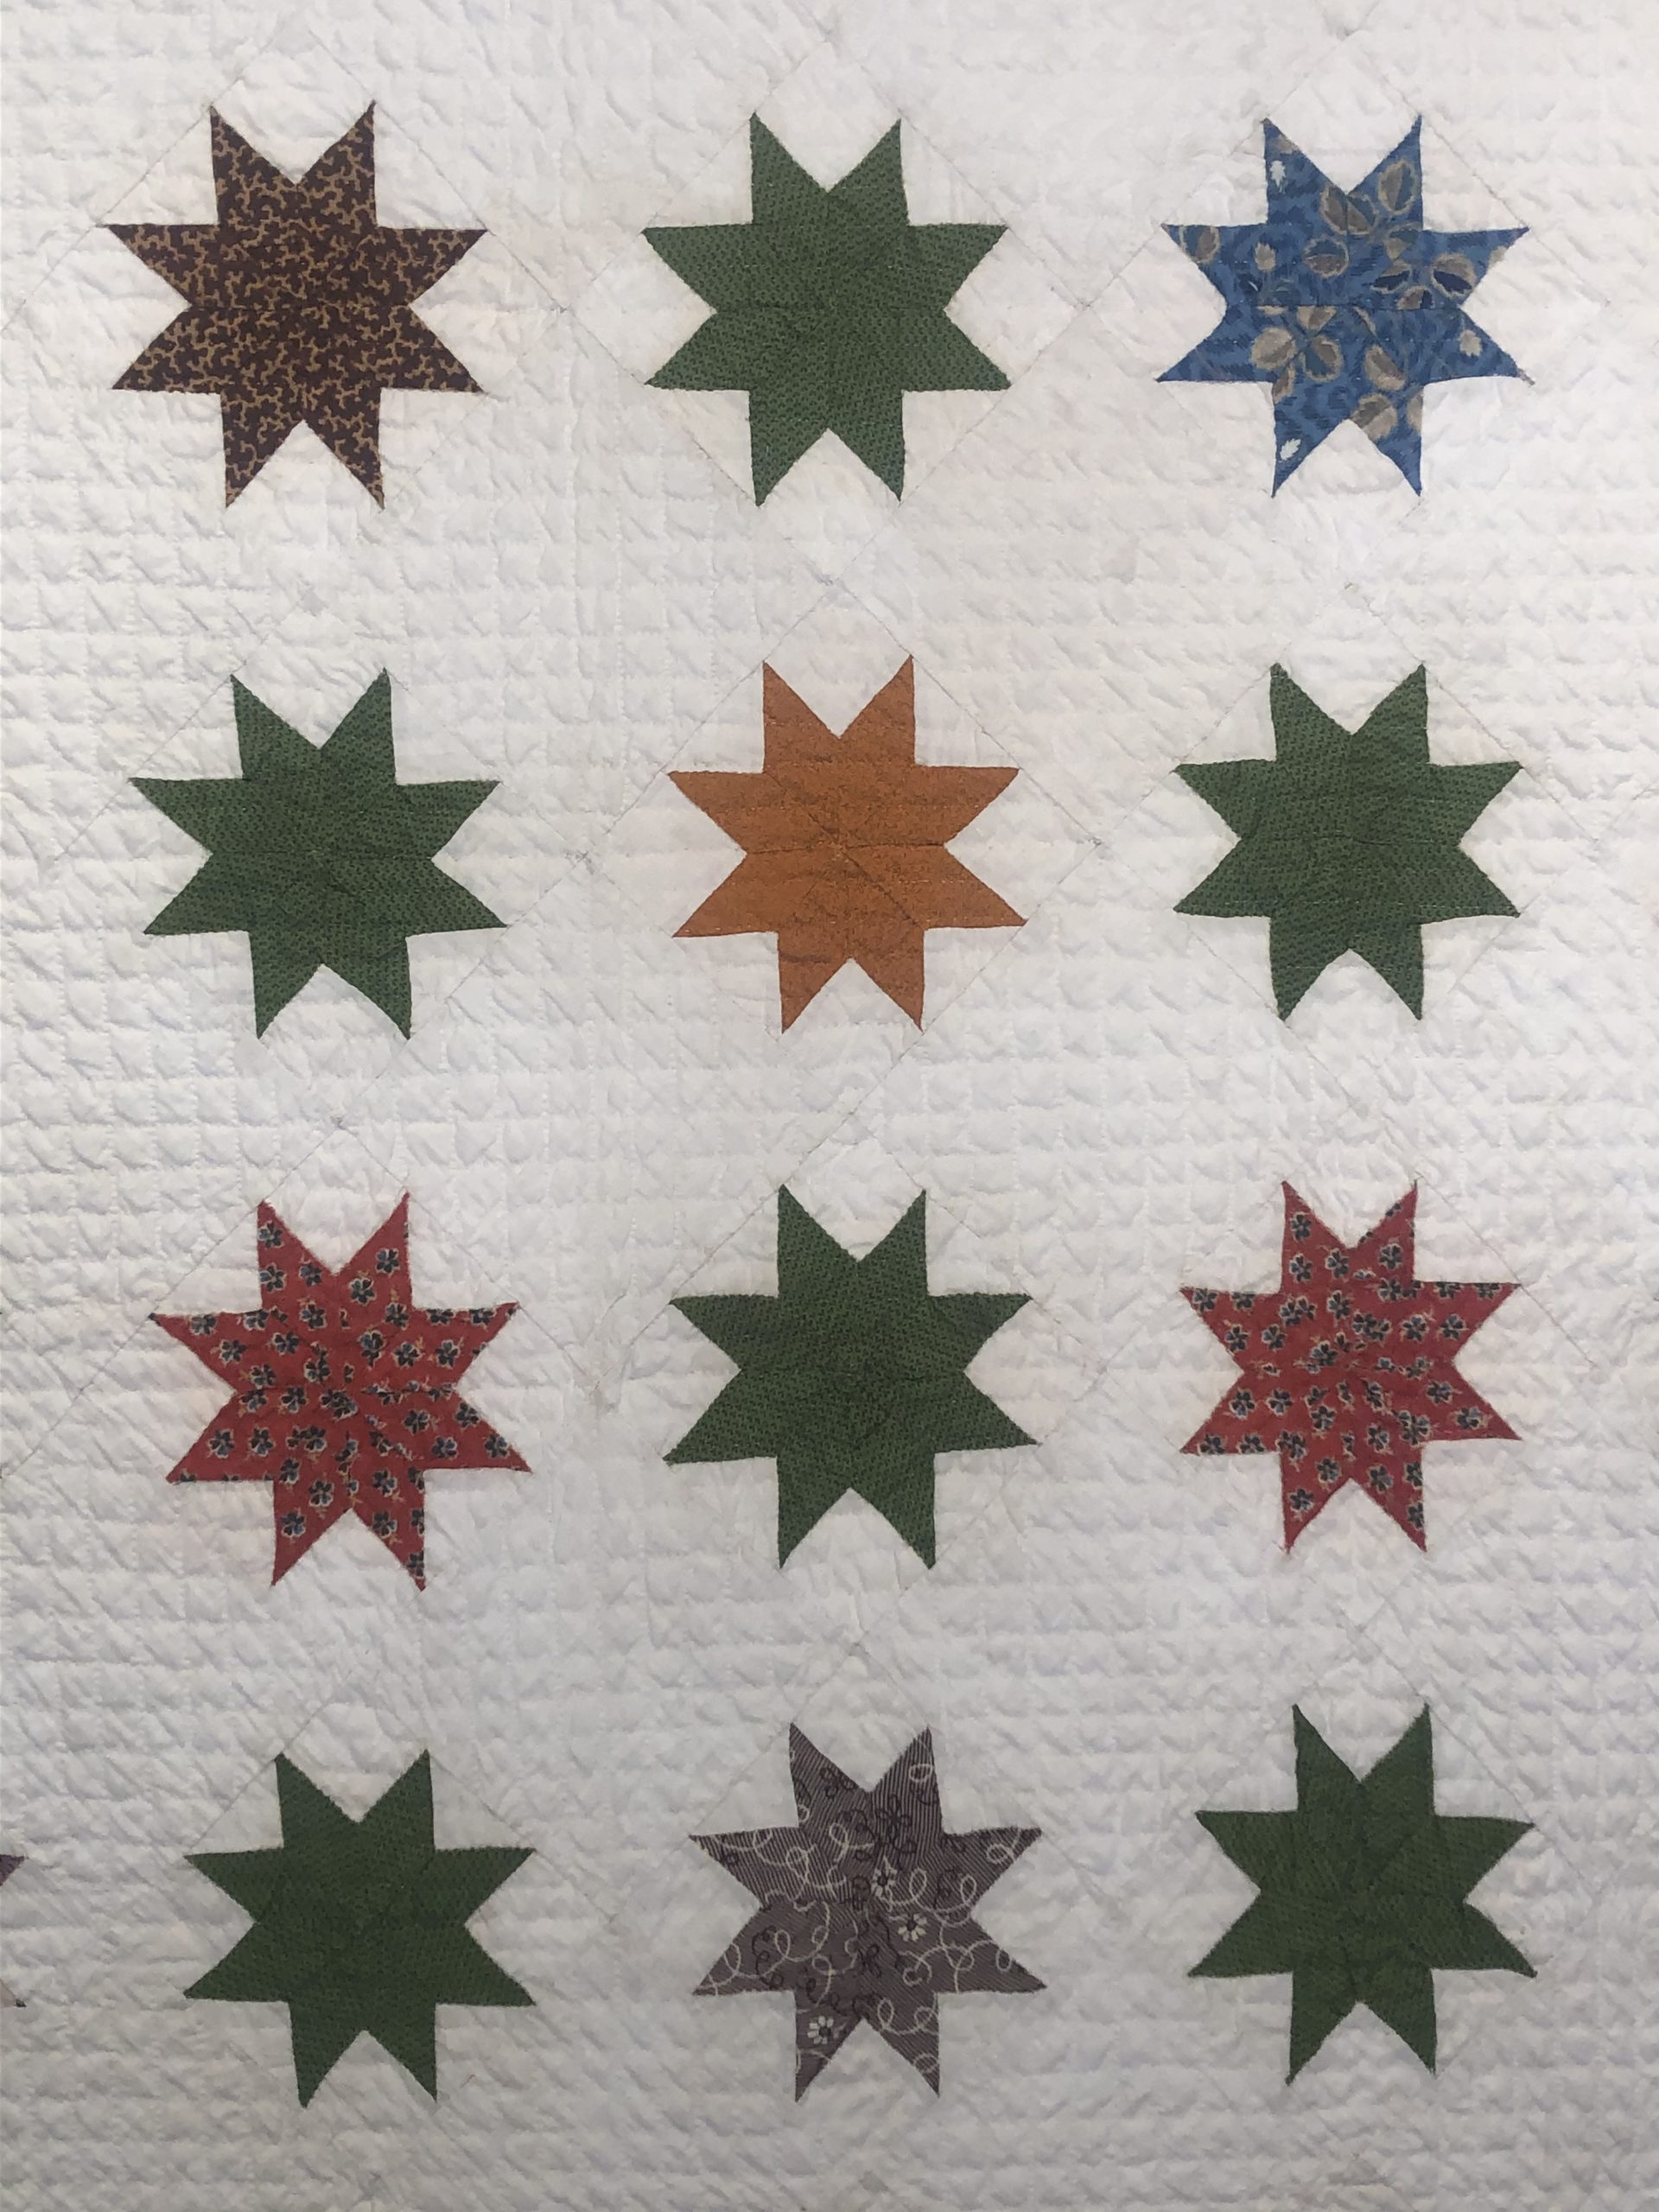 antique pennsylvania star quilt rel=